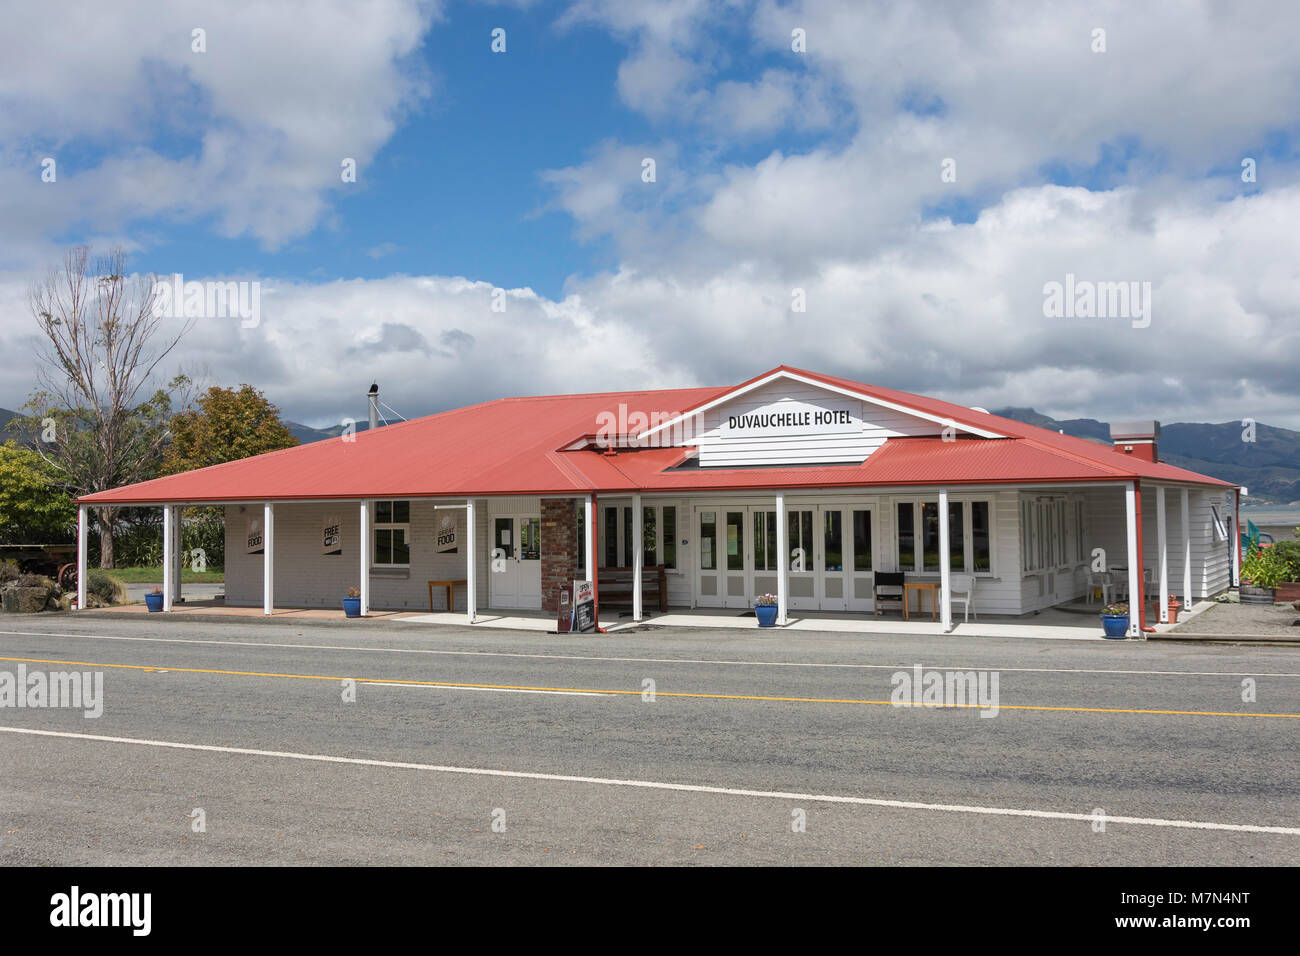 Historische Duvauchelle Hotel, Duvauchelle, Hafen von Akaroa Halbinsel, Banken, Canterbury, Neuseeland Stockfoto